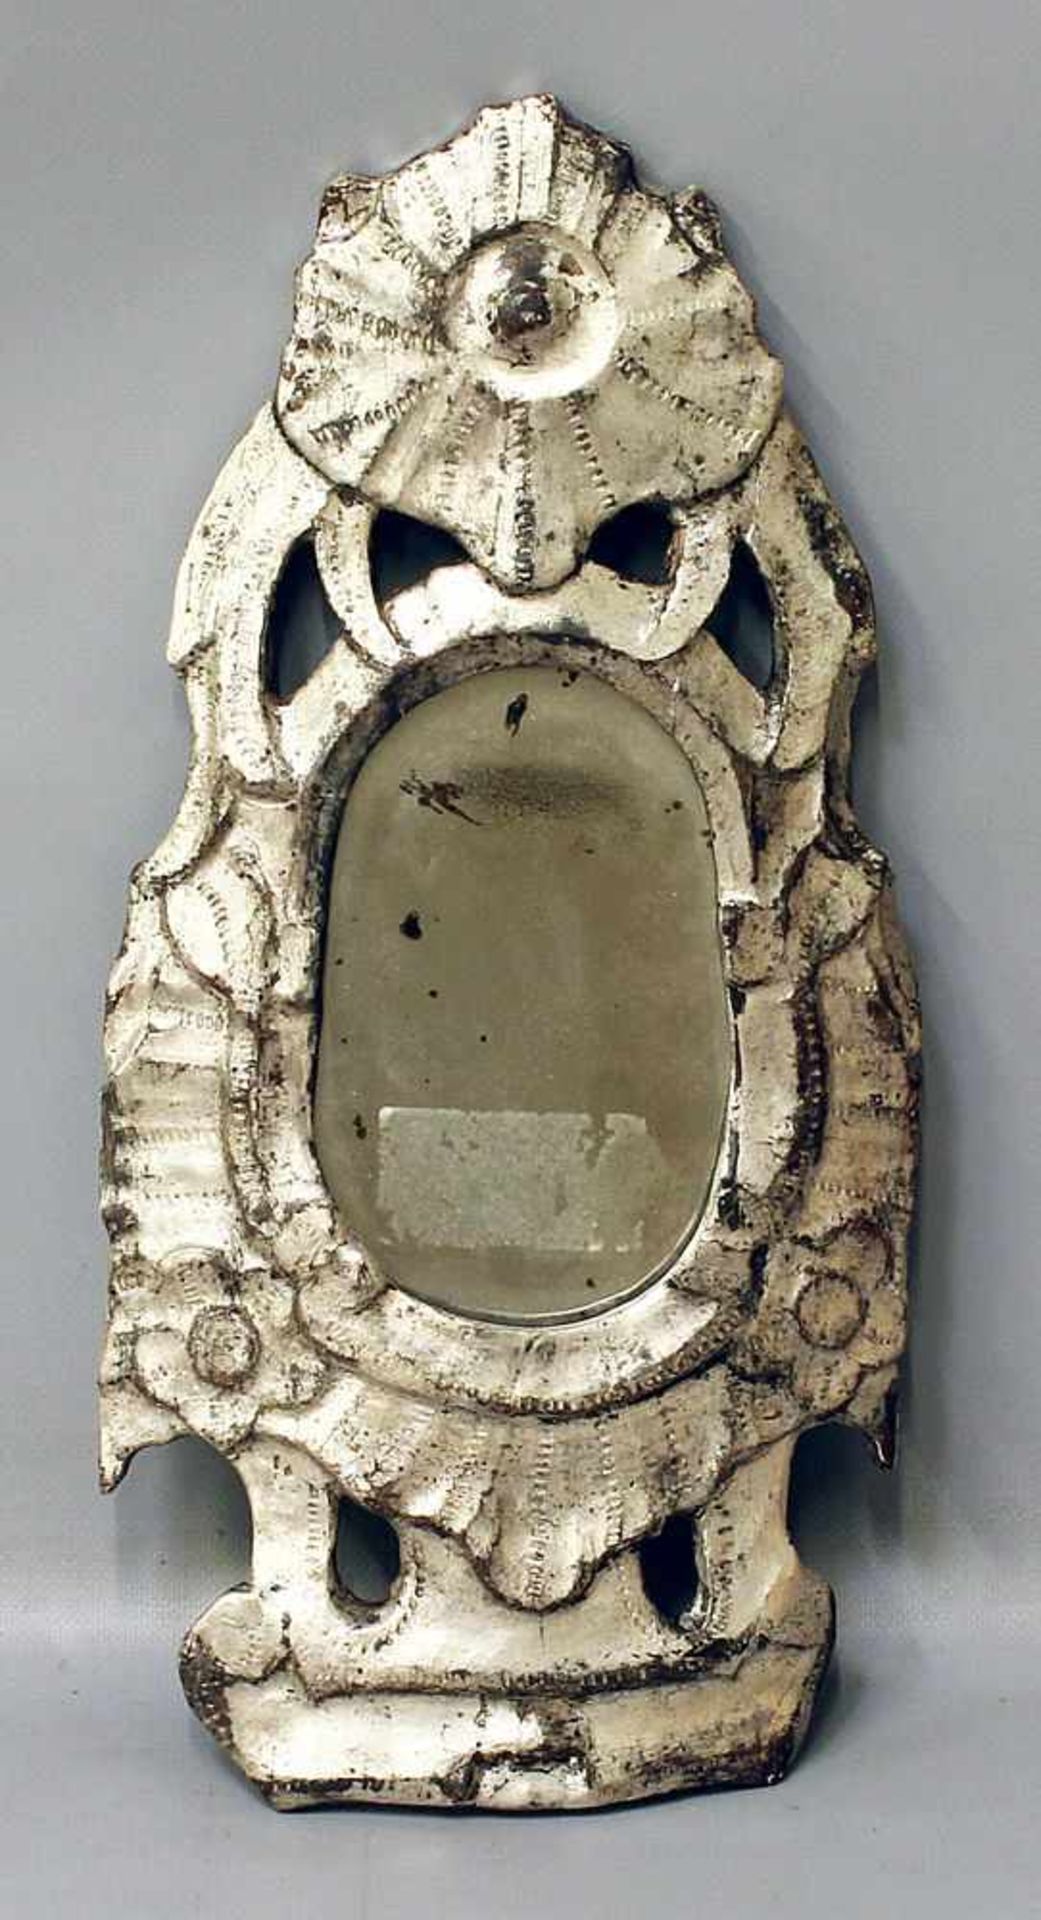 Barock-Spiegel (Italien, 17./18. Jh.)Holz versilbert. Schildform mit geschnitzten Blumen und